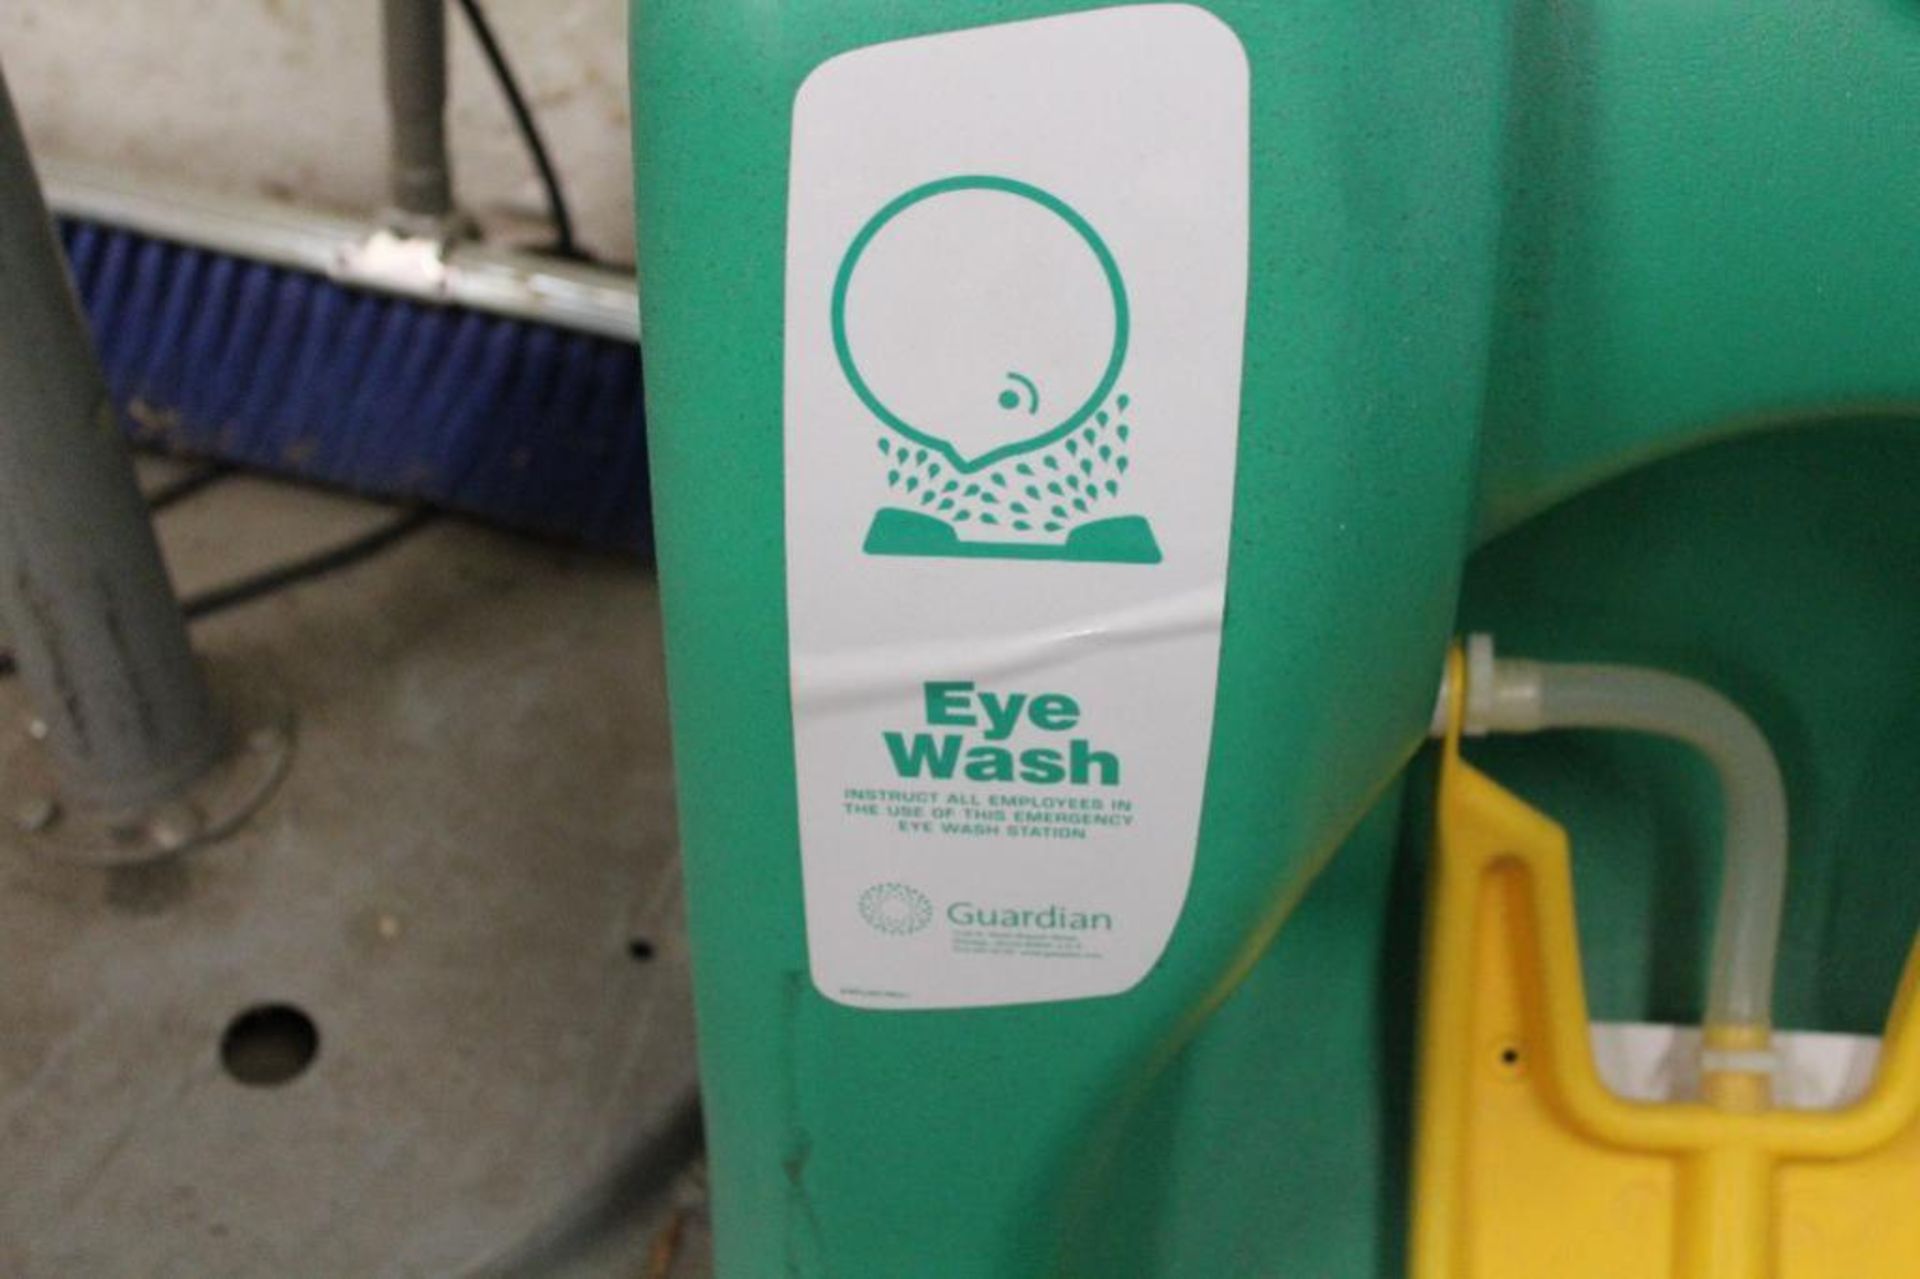 AquaGuard eye wash station - Image 3 of 3